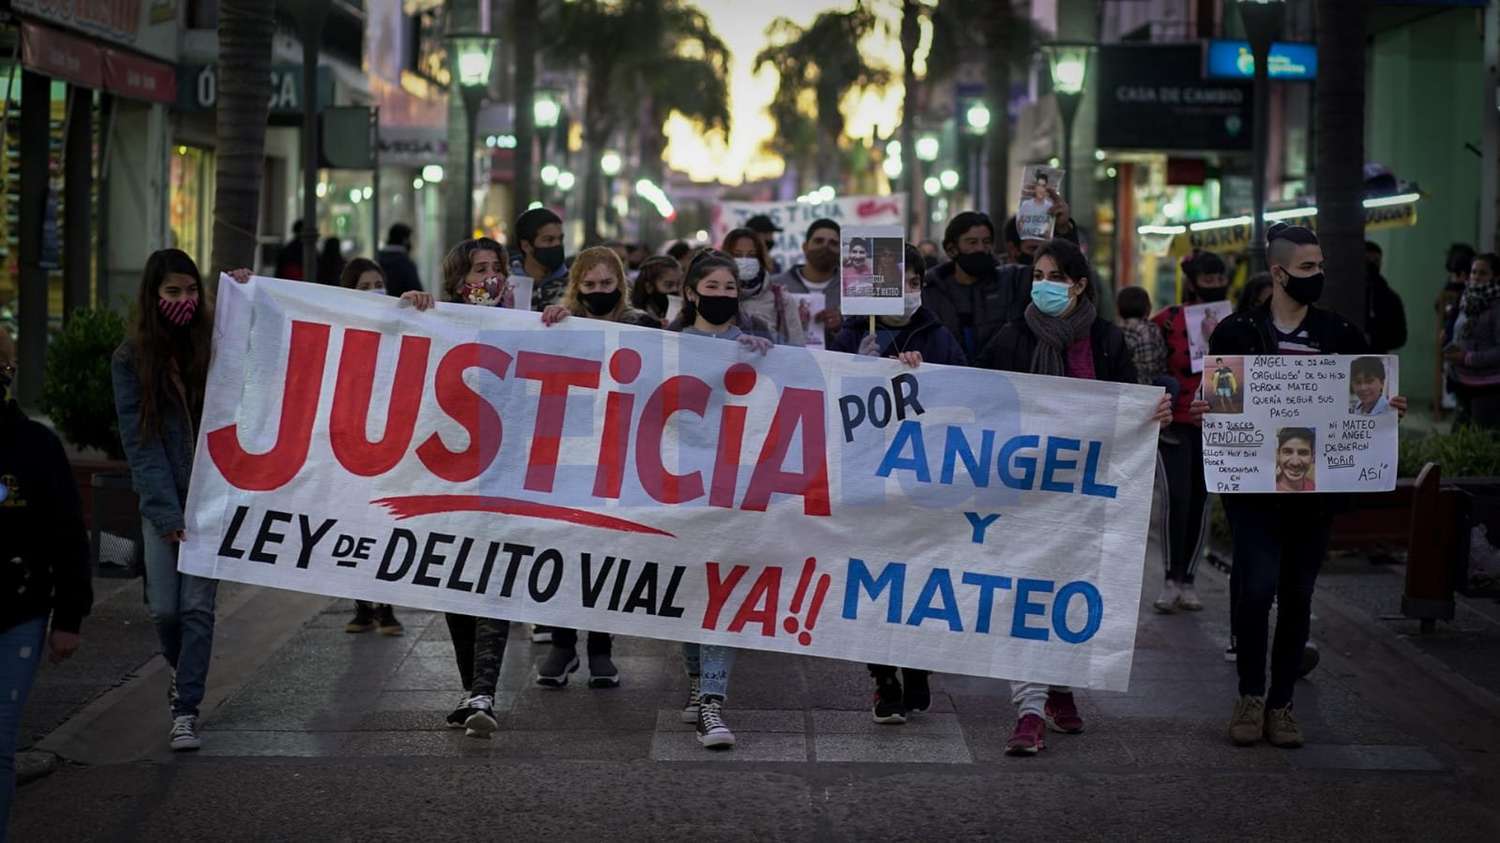 Volvieron a pedir Justicia por Ángel y Mateo, las víctimas de la tragedia de Corrientes